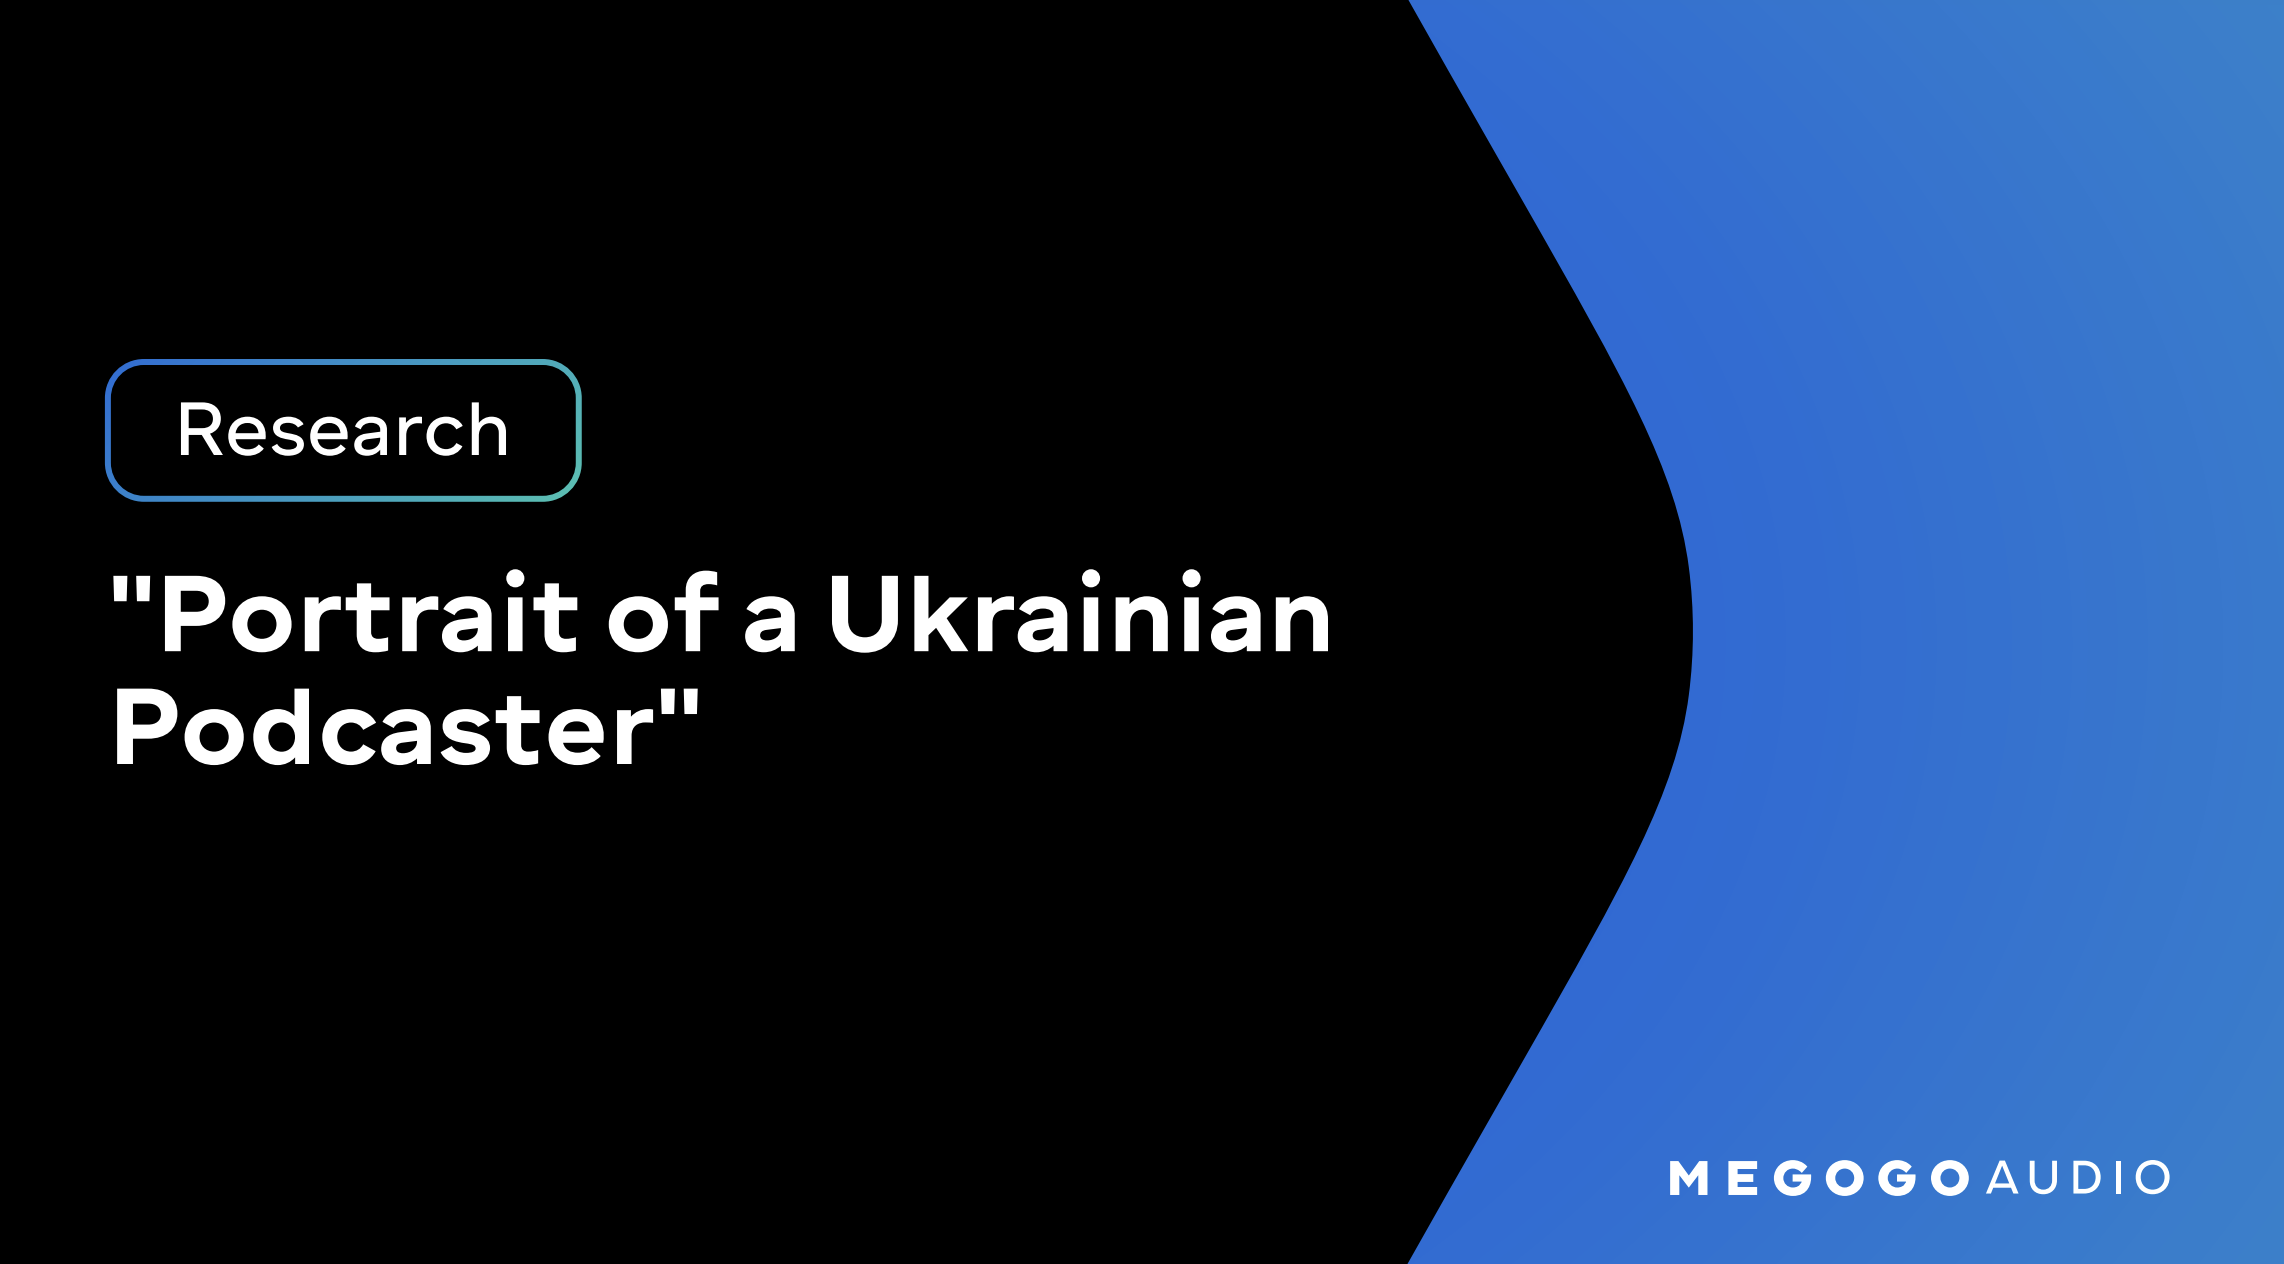 ウクライナのポッドキャスト市場が急成長、MEGOGOが調査結果を発表